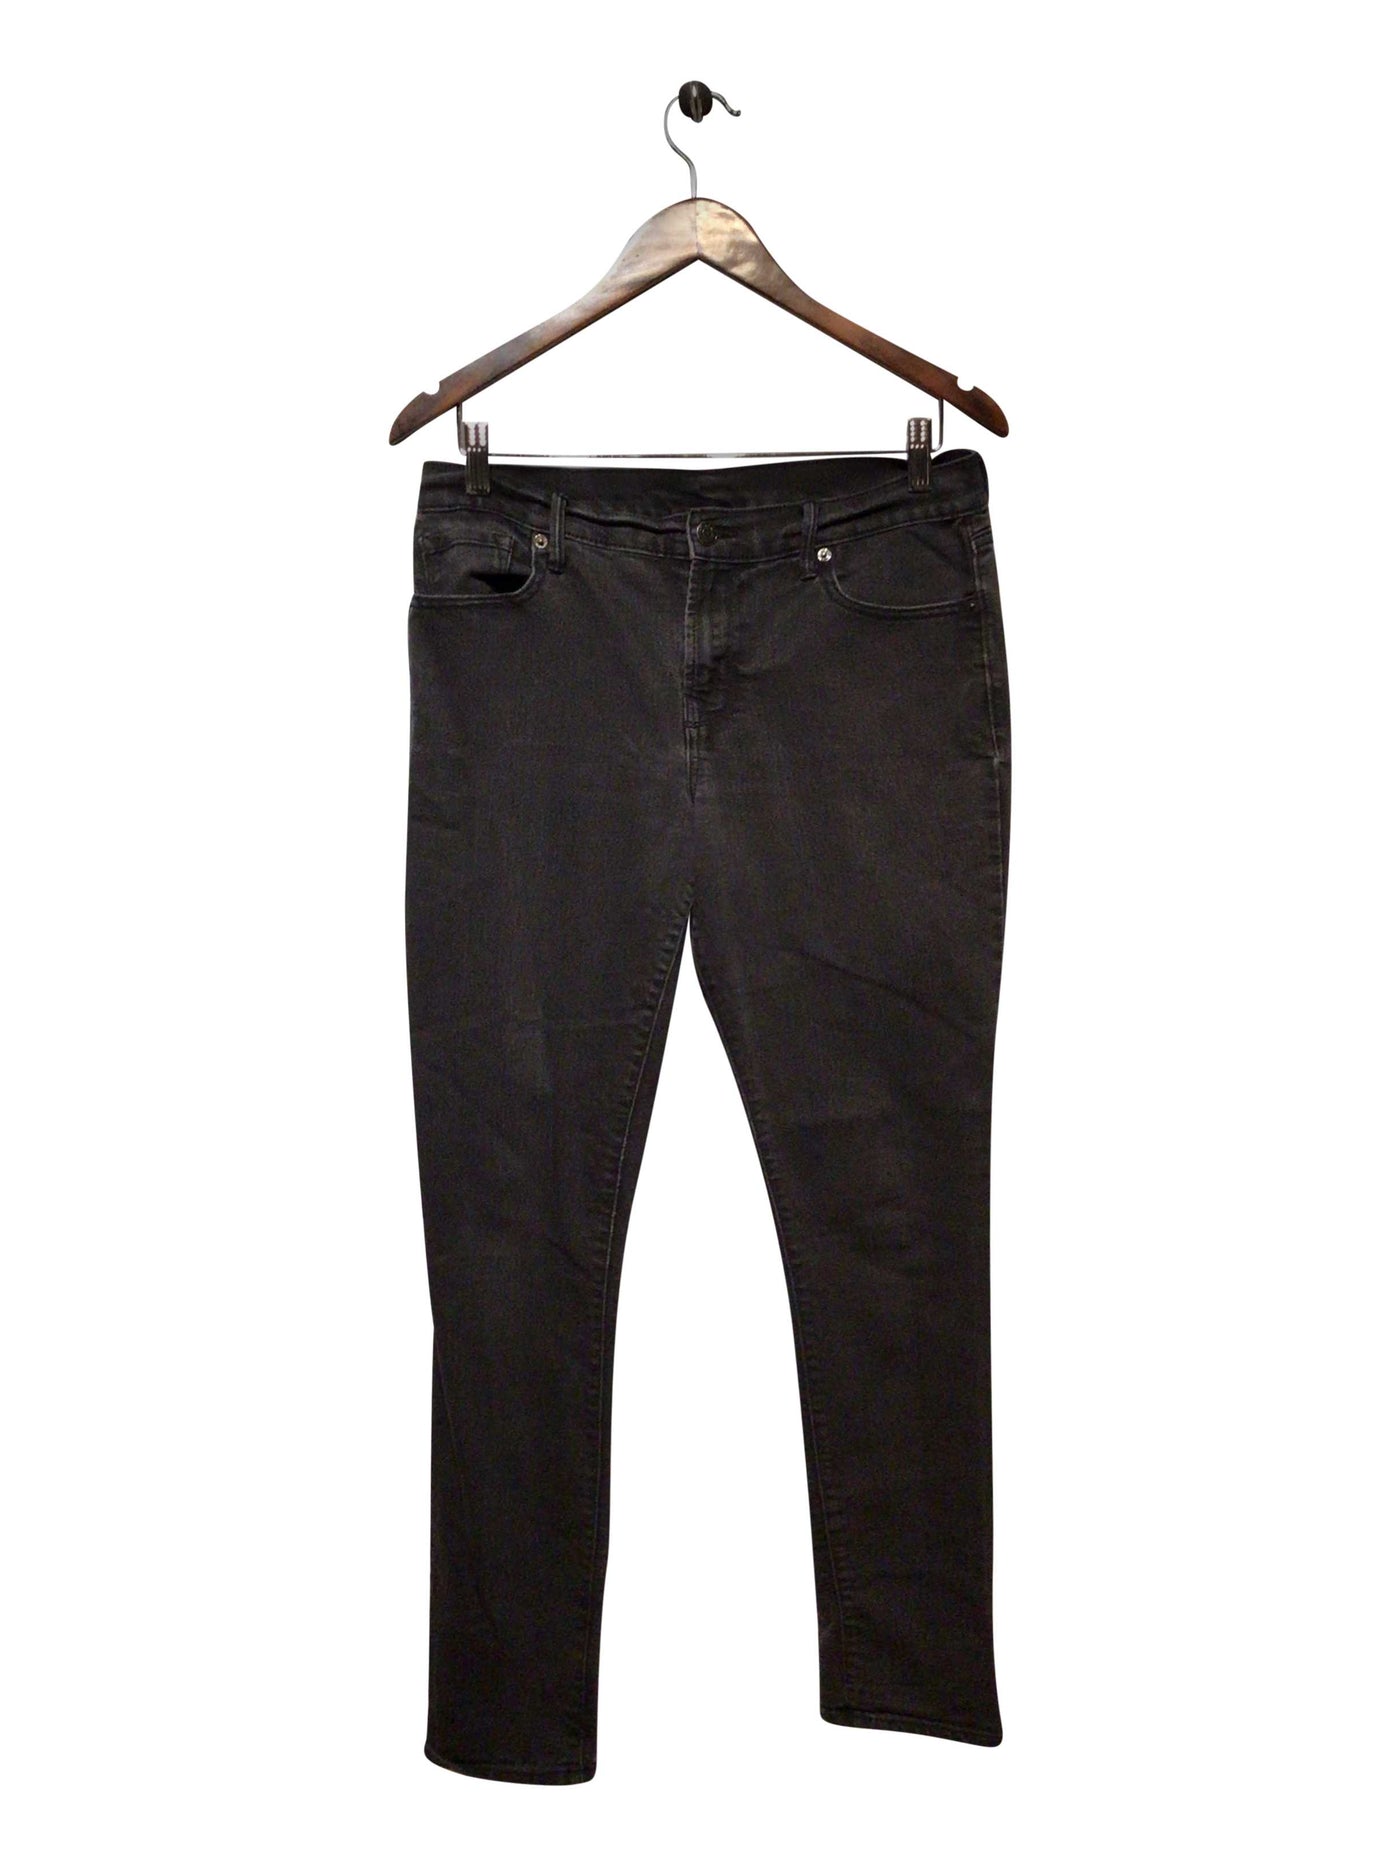 UNBRANDED Regular fit Straight-legged Jean in Black  -  8  14.99 Koop